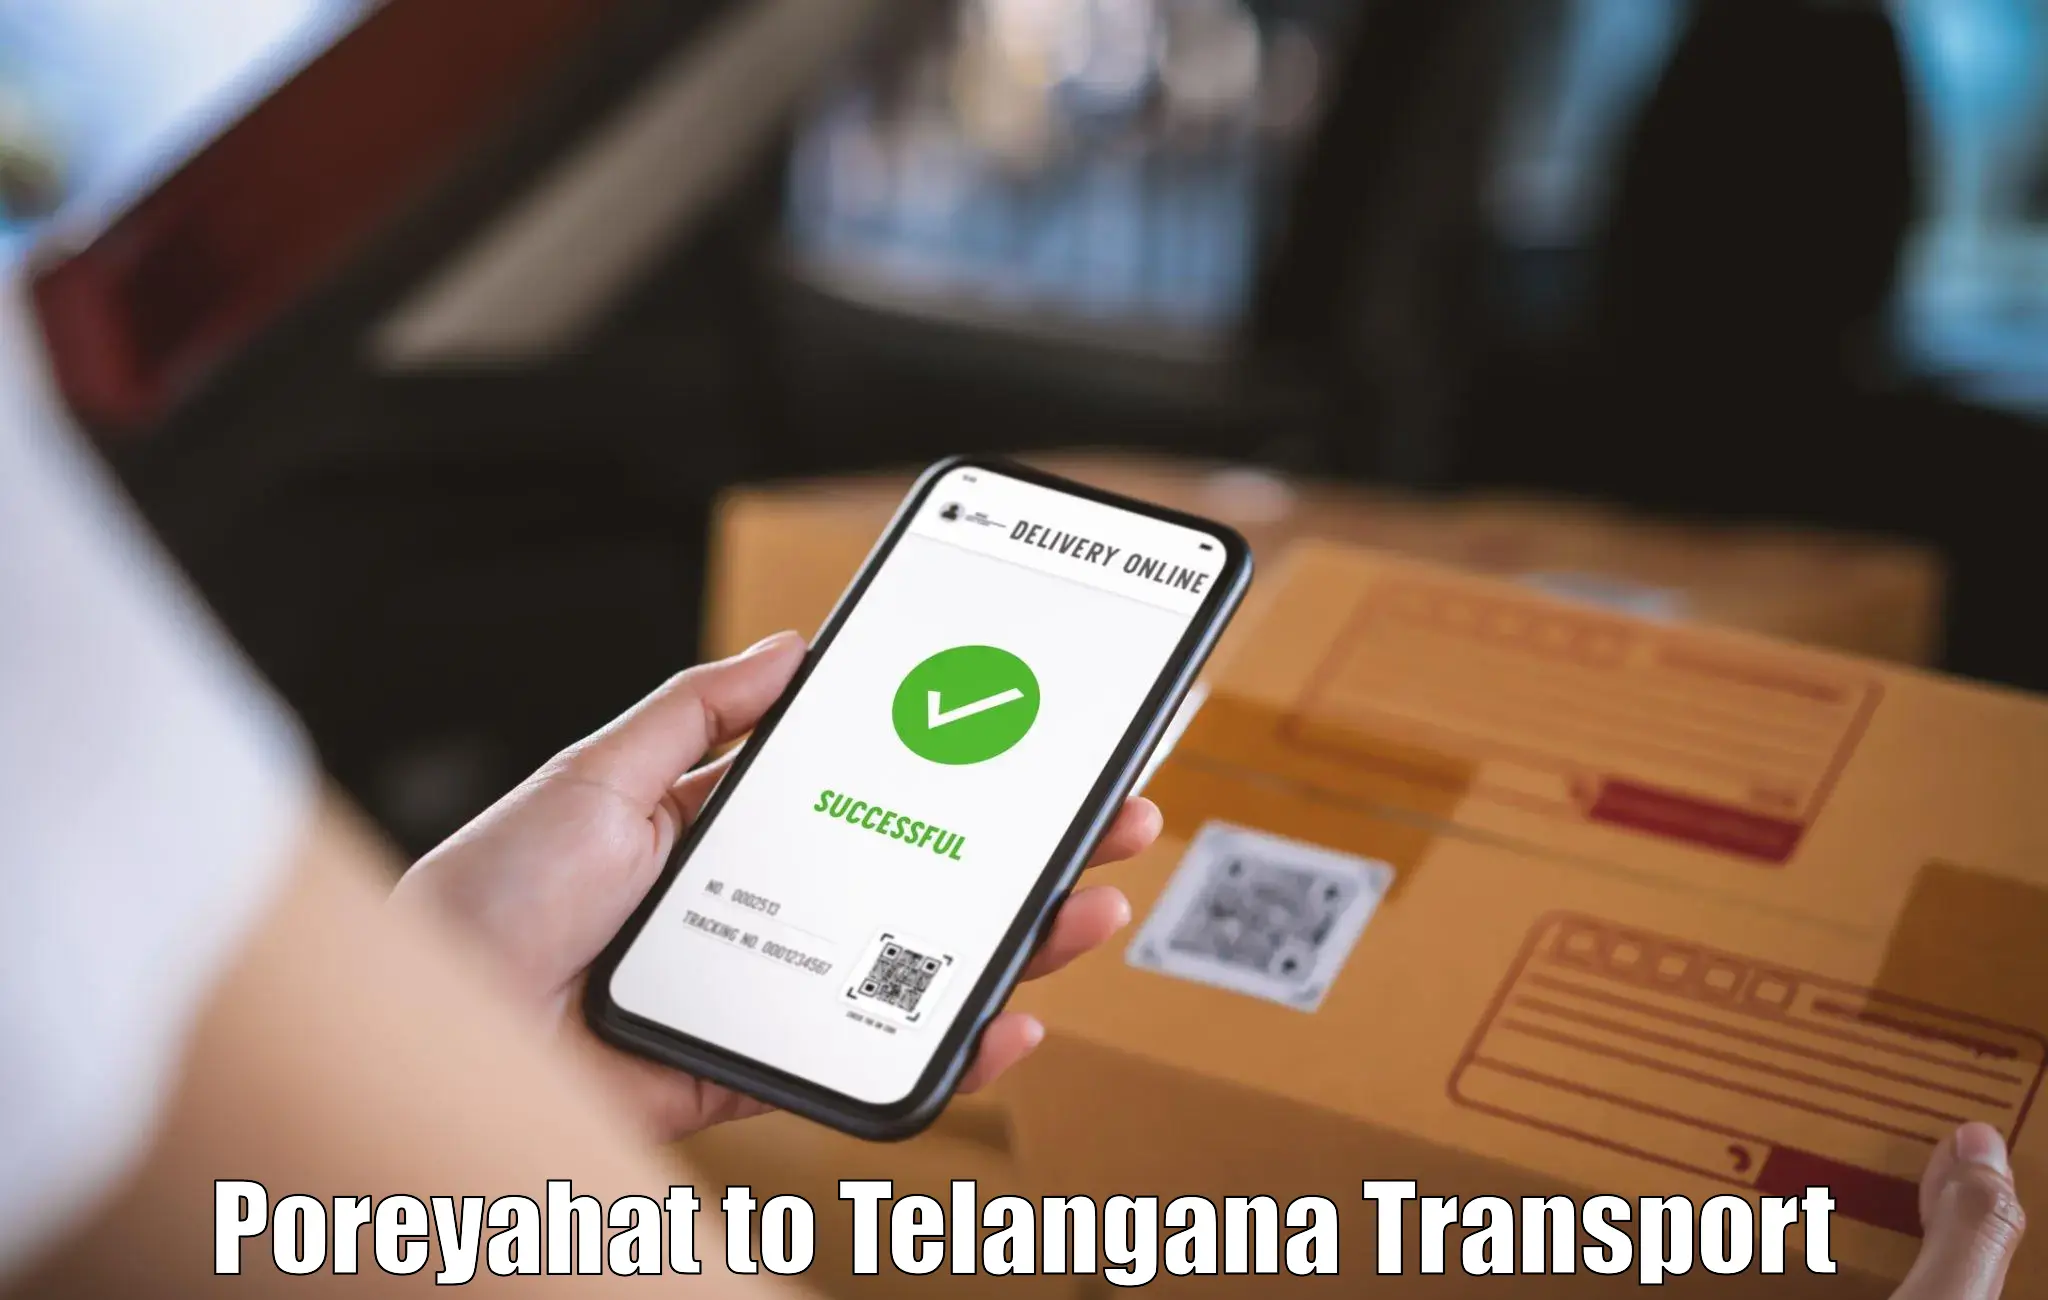 Transport in sharing Poreyahat to Kakeshwaram